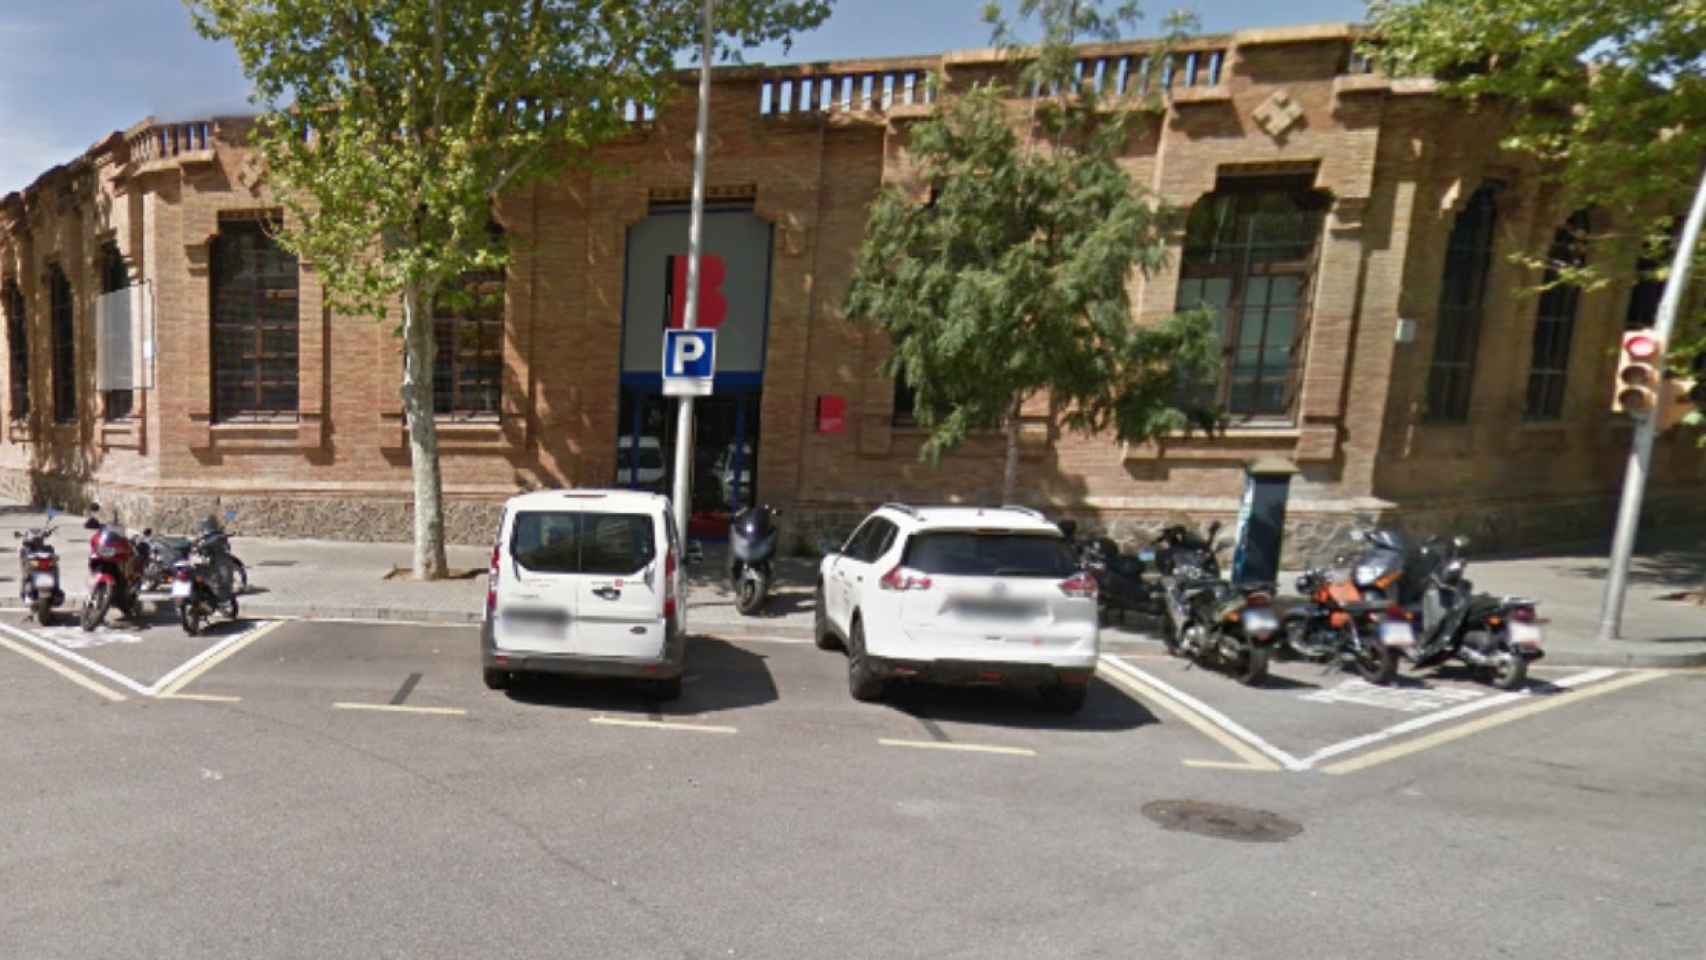 Exterior del centro de urgencias y emergencias sociales de Barcelona en Poblenou / Google Maps